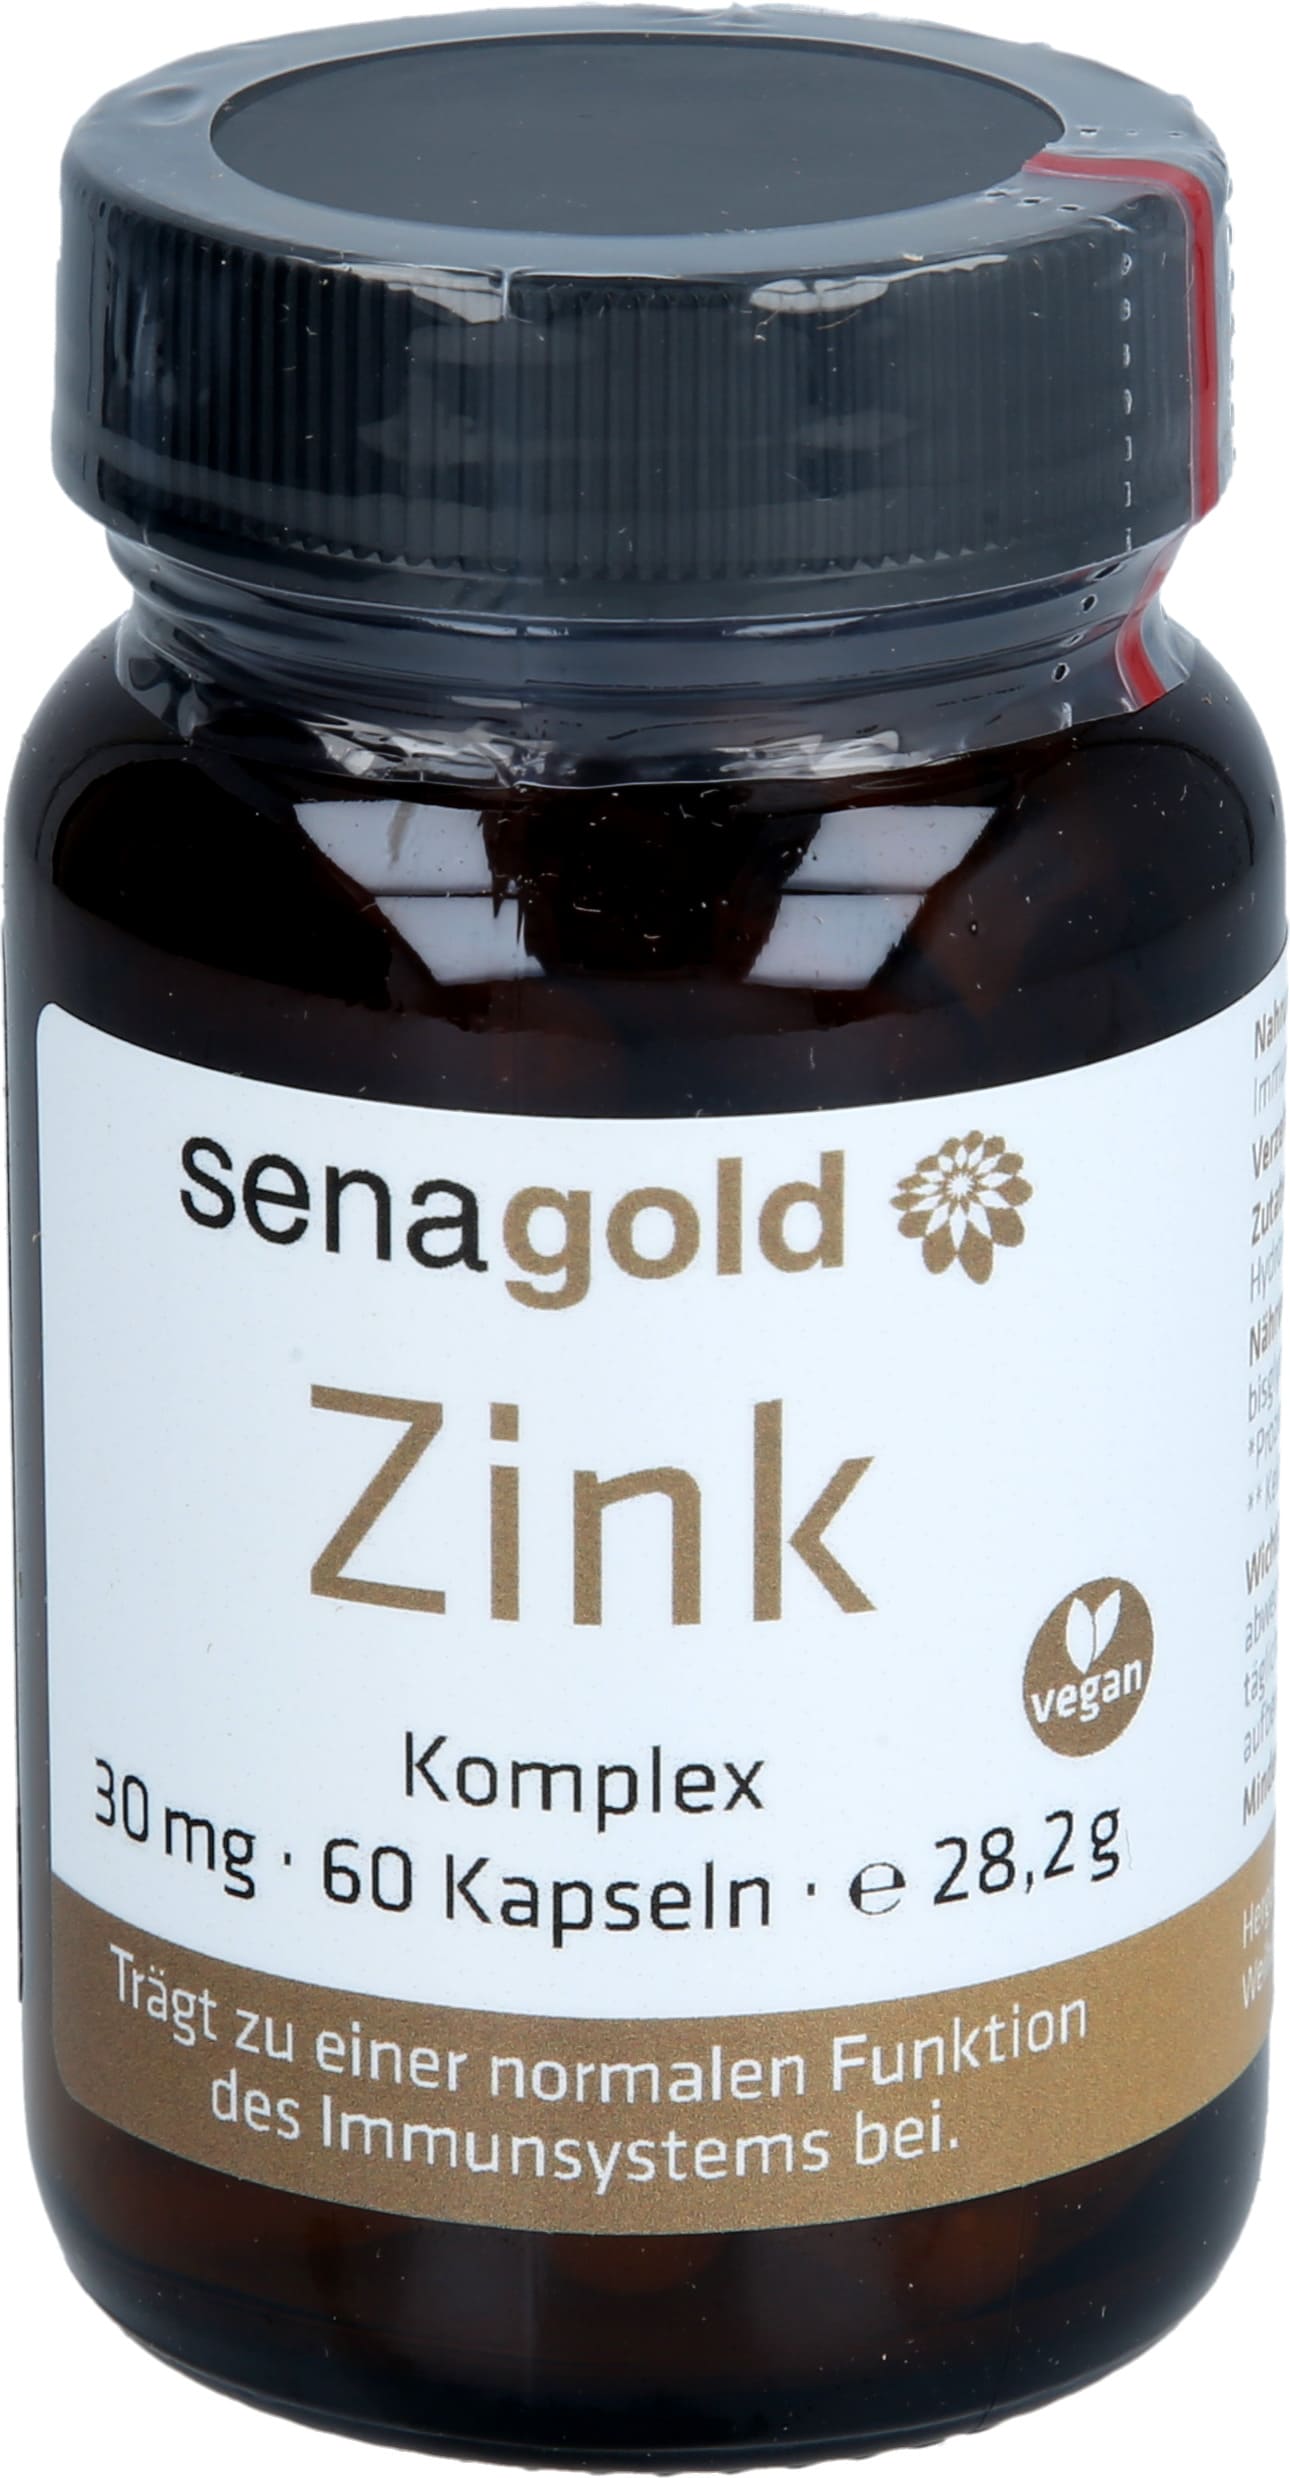 Senagold Zink Komplex Kapseln 30 mg - 2 x 60 St.